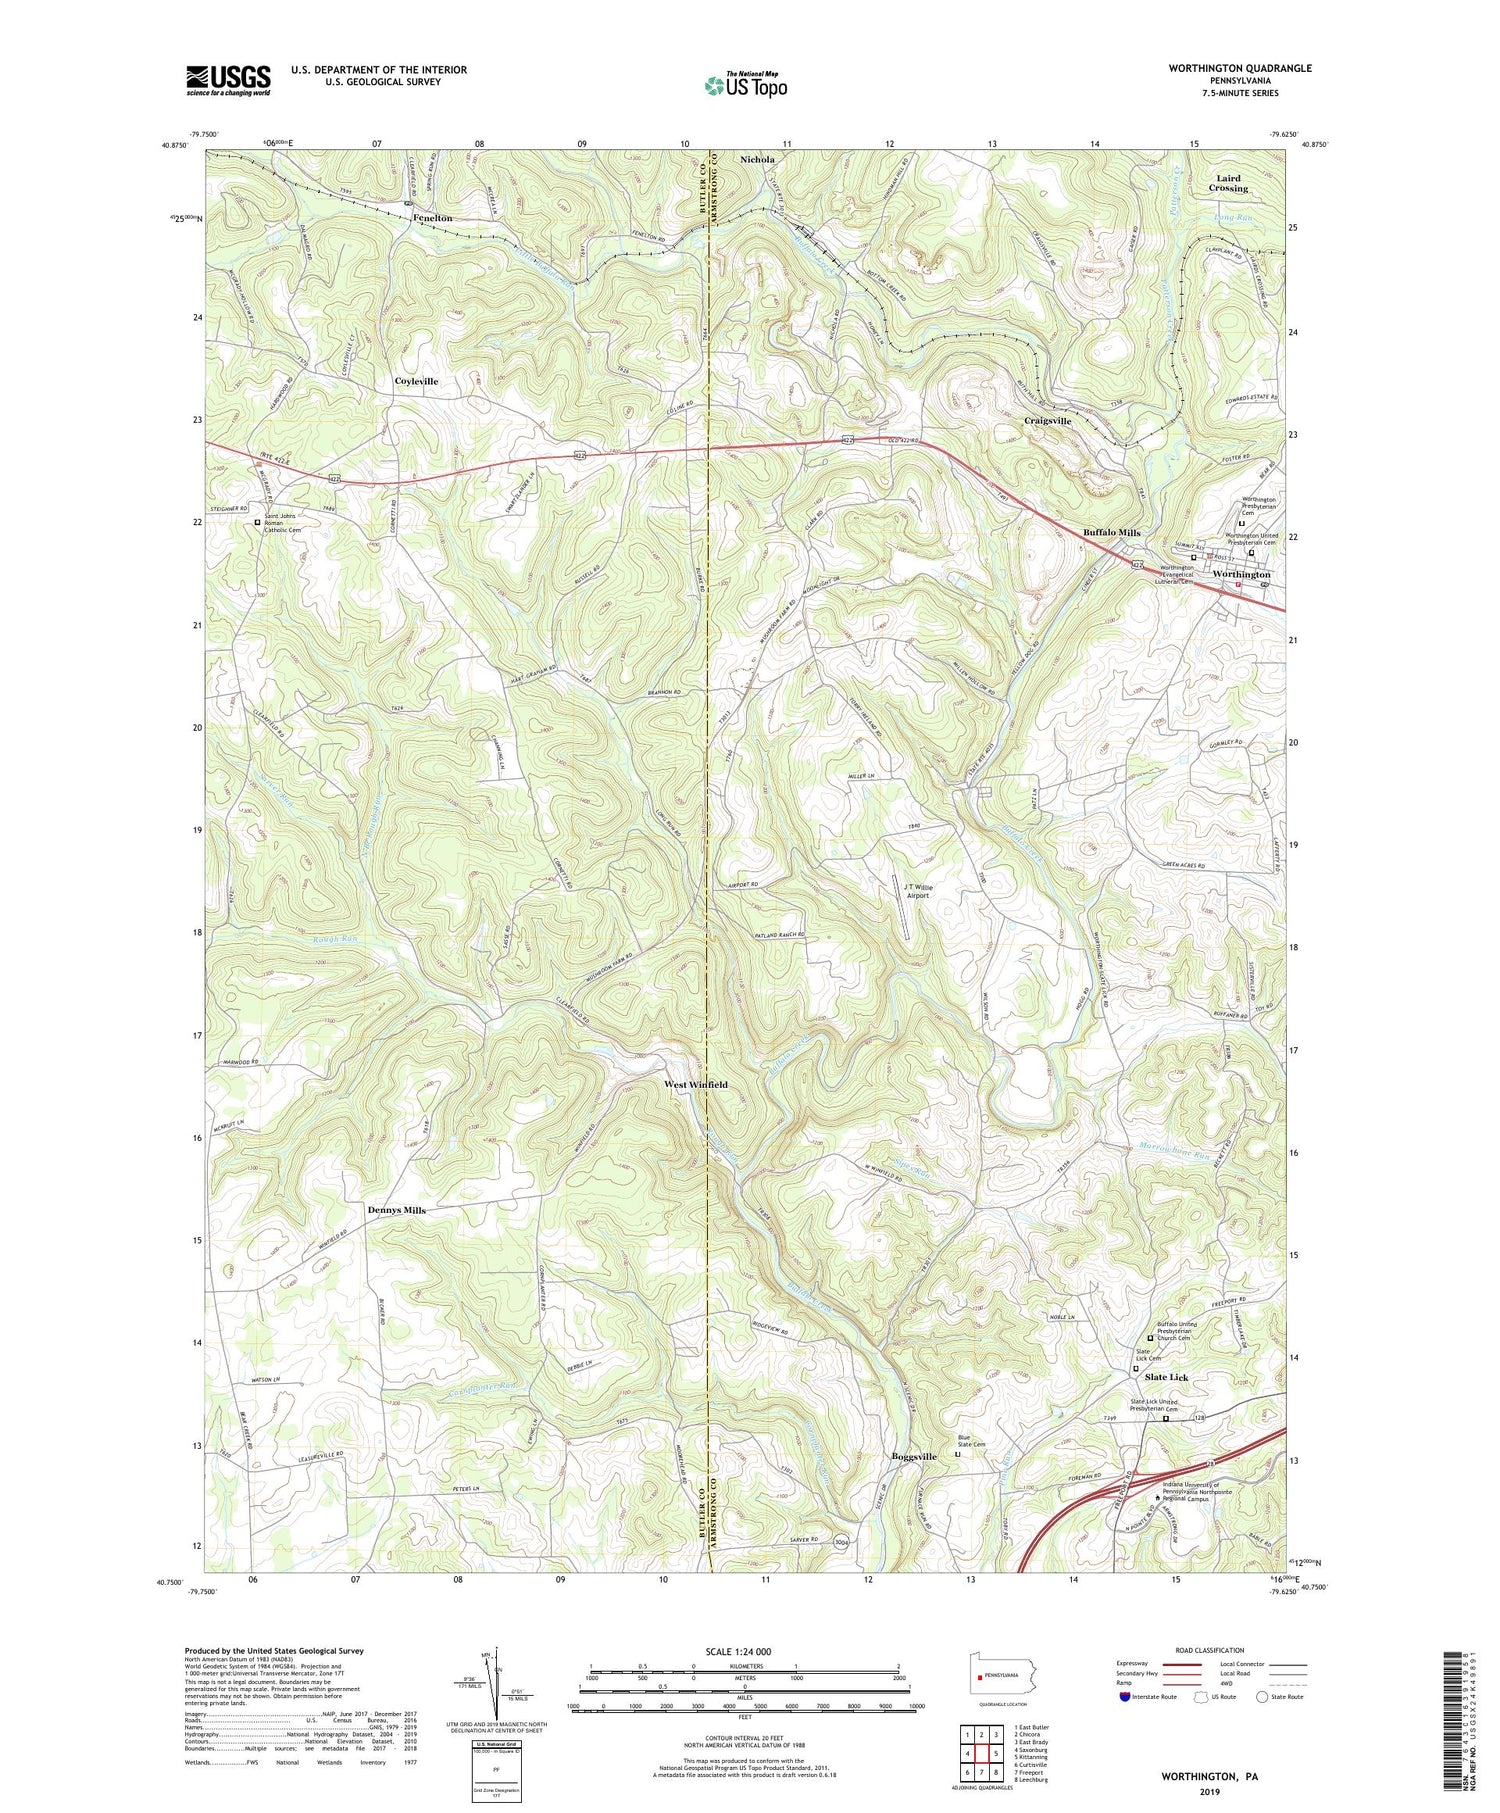 Worthington Pennsylvania US Topo Map Image